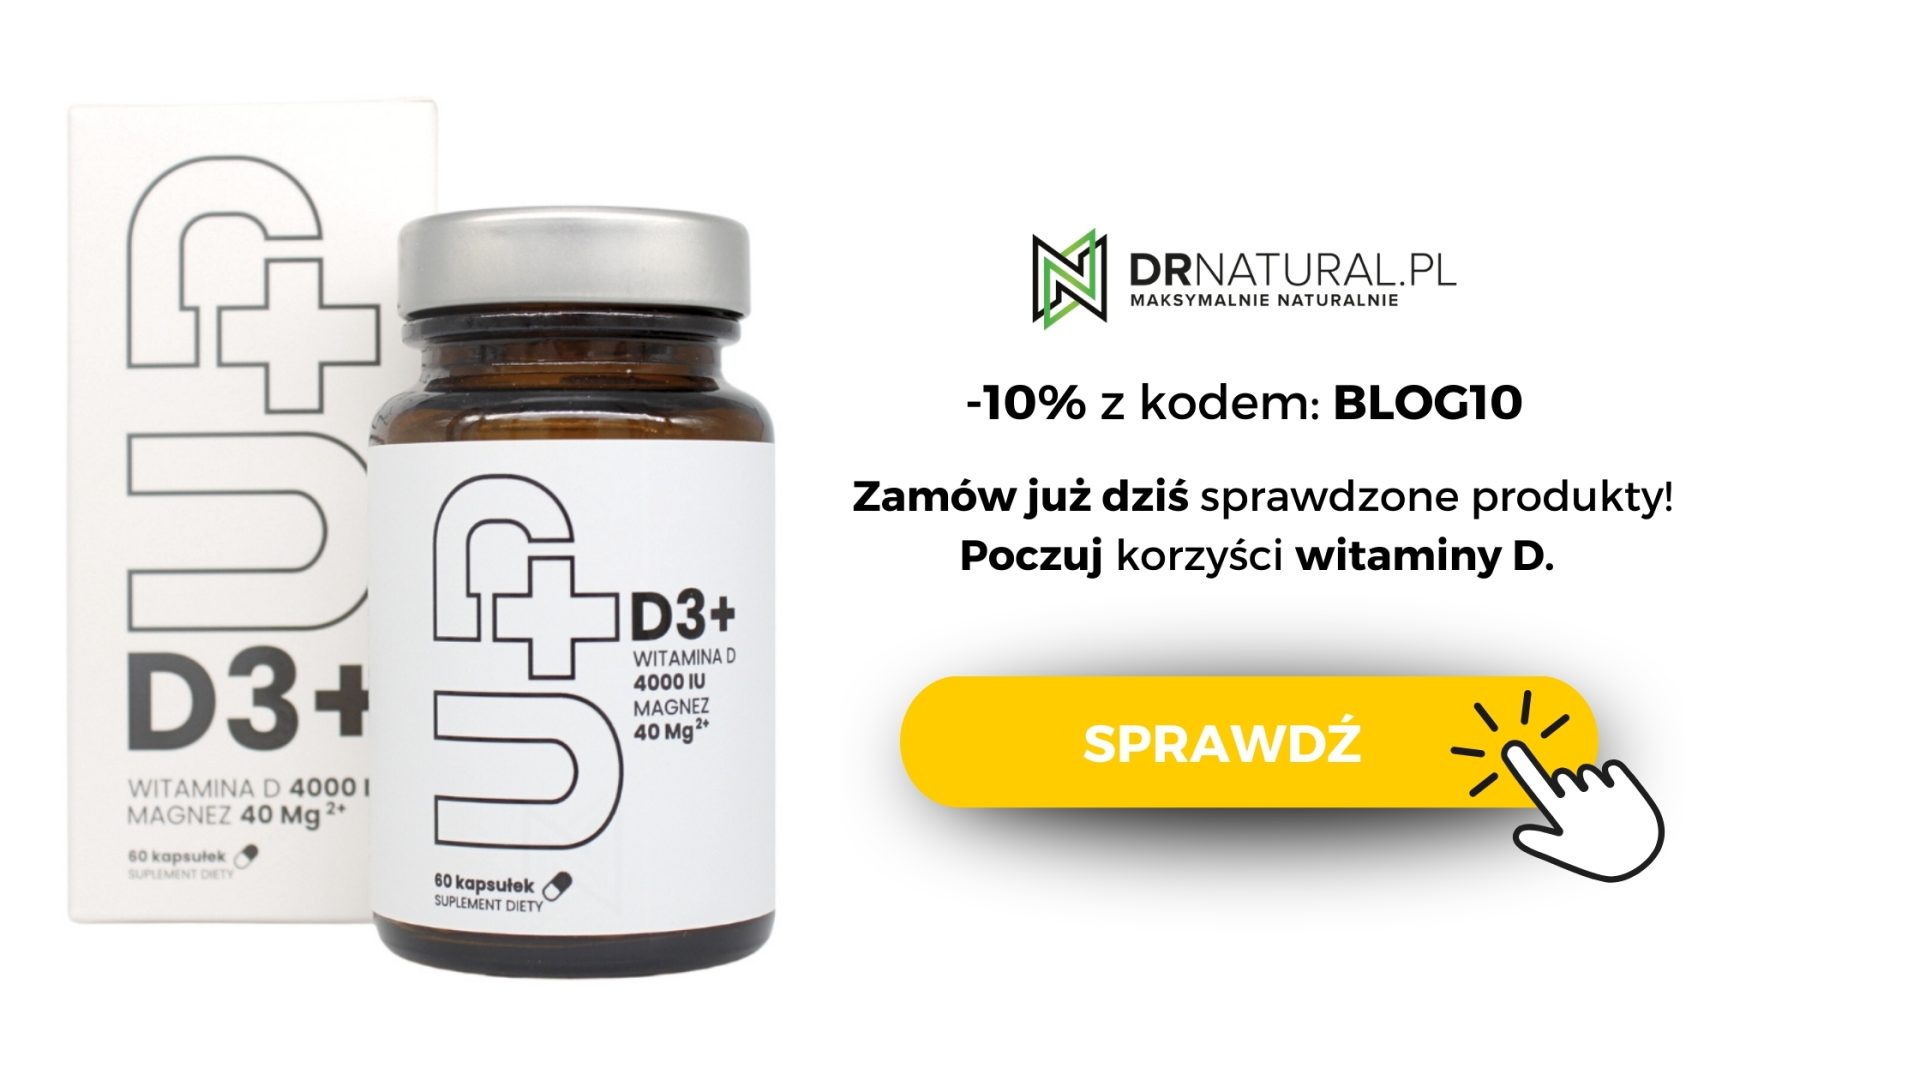 Butelka suplementu UP - D3+, z 10% kodem rabatowym BLOG10 - zamów już dziś na drnatural.pl i poczuj korzyści witaminy d. Przycisk pomarańczowy z napisem "sprawdź" i ikona klikania myszką